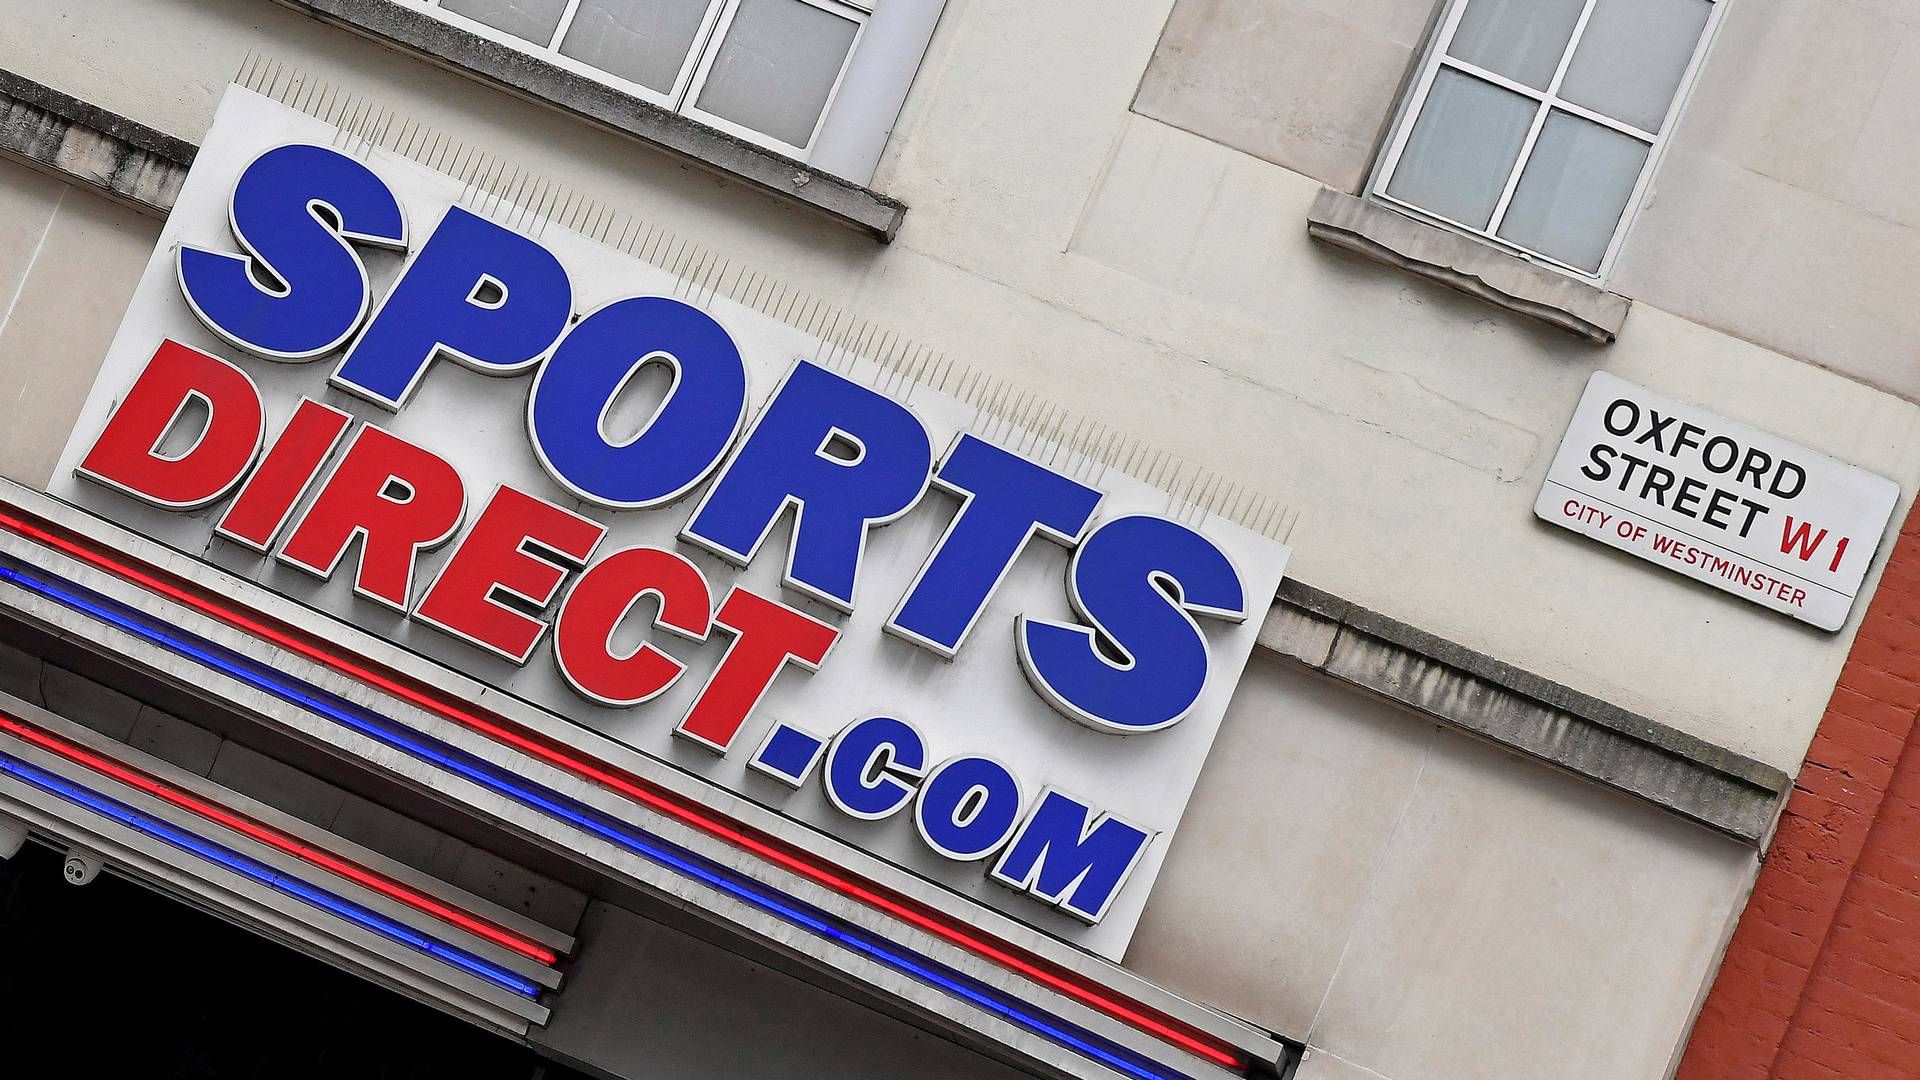 Frasers Group har over 800 Sports Direct-butikker i Storbritannien. Sportskæden er den primære drivkraft i sport- og modekoncernen. | Foto: Toby Melville